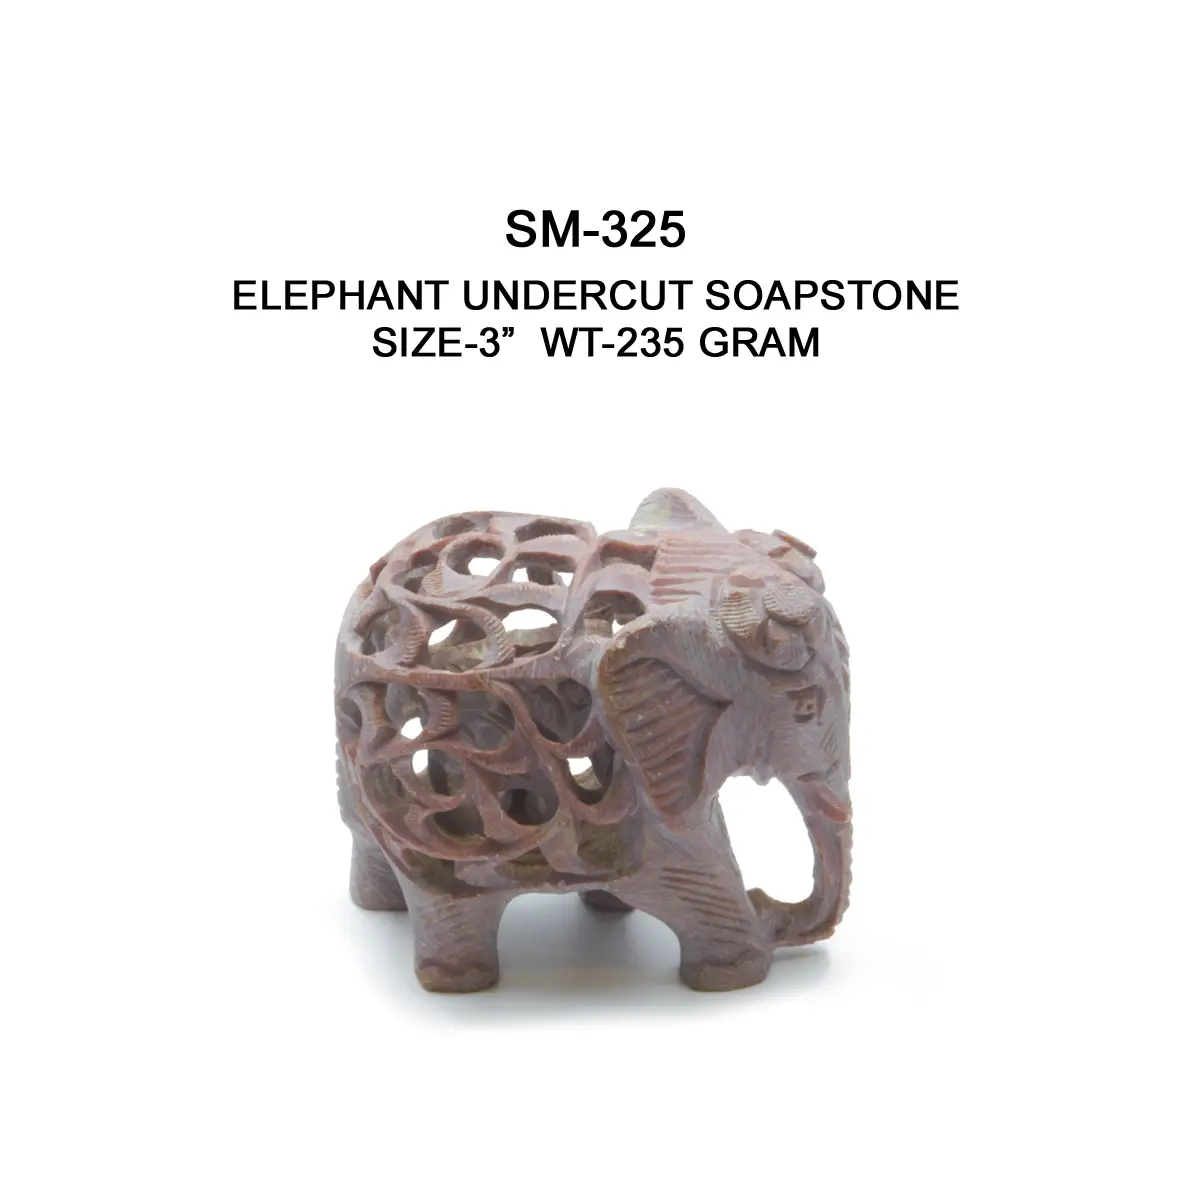 ELEPHANT UNDERCUT SOAPSTONE